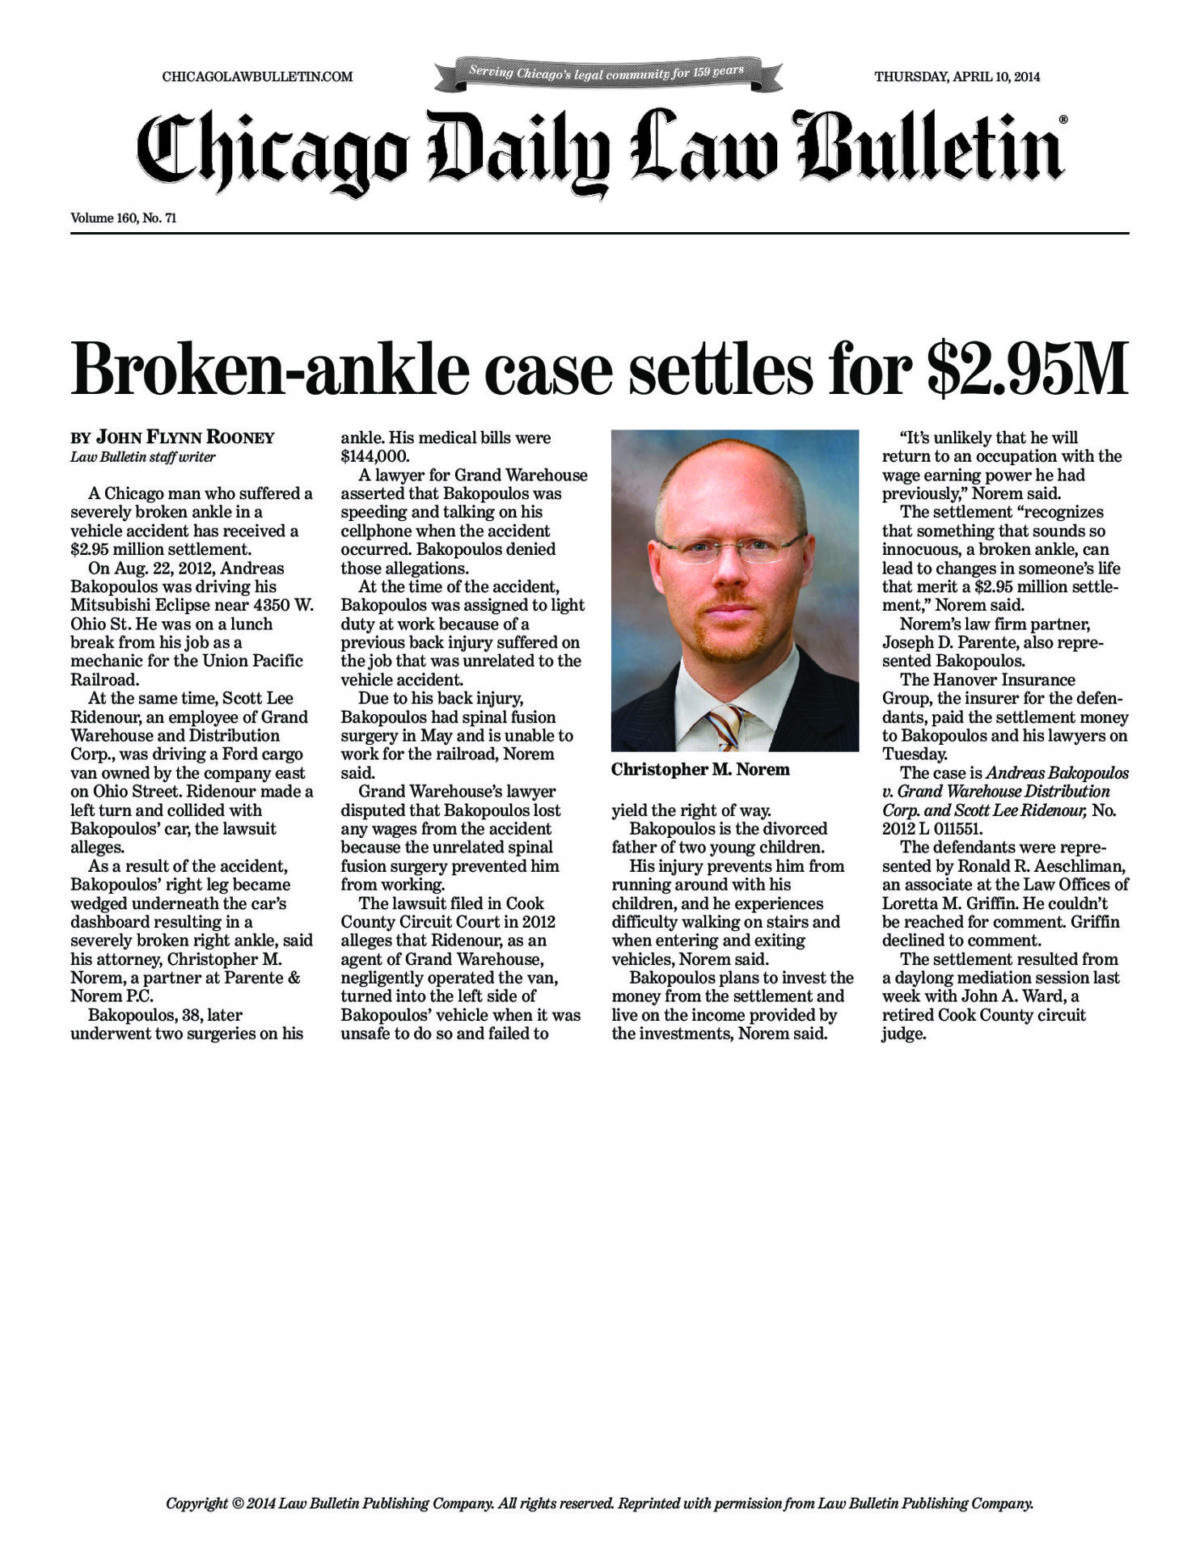 Broken-ankle case settles for $2.95M